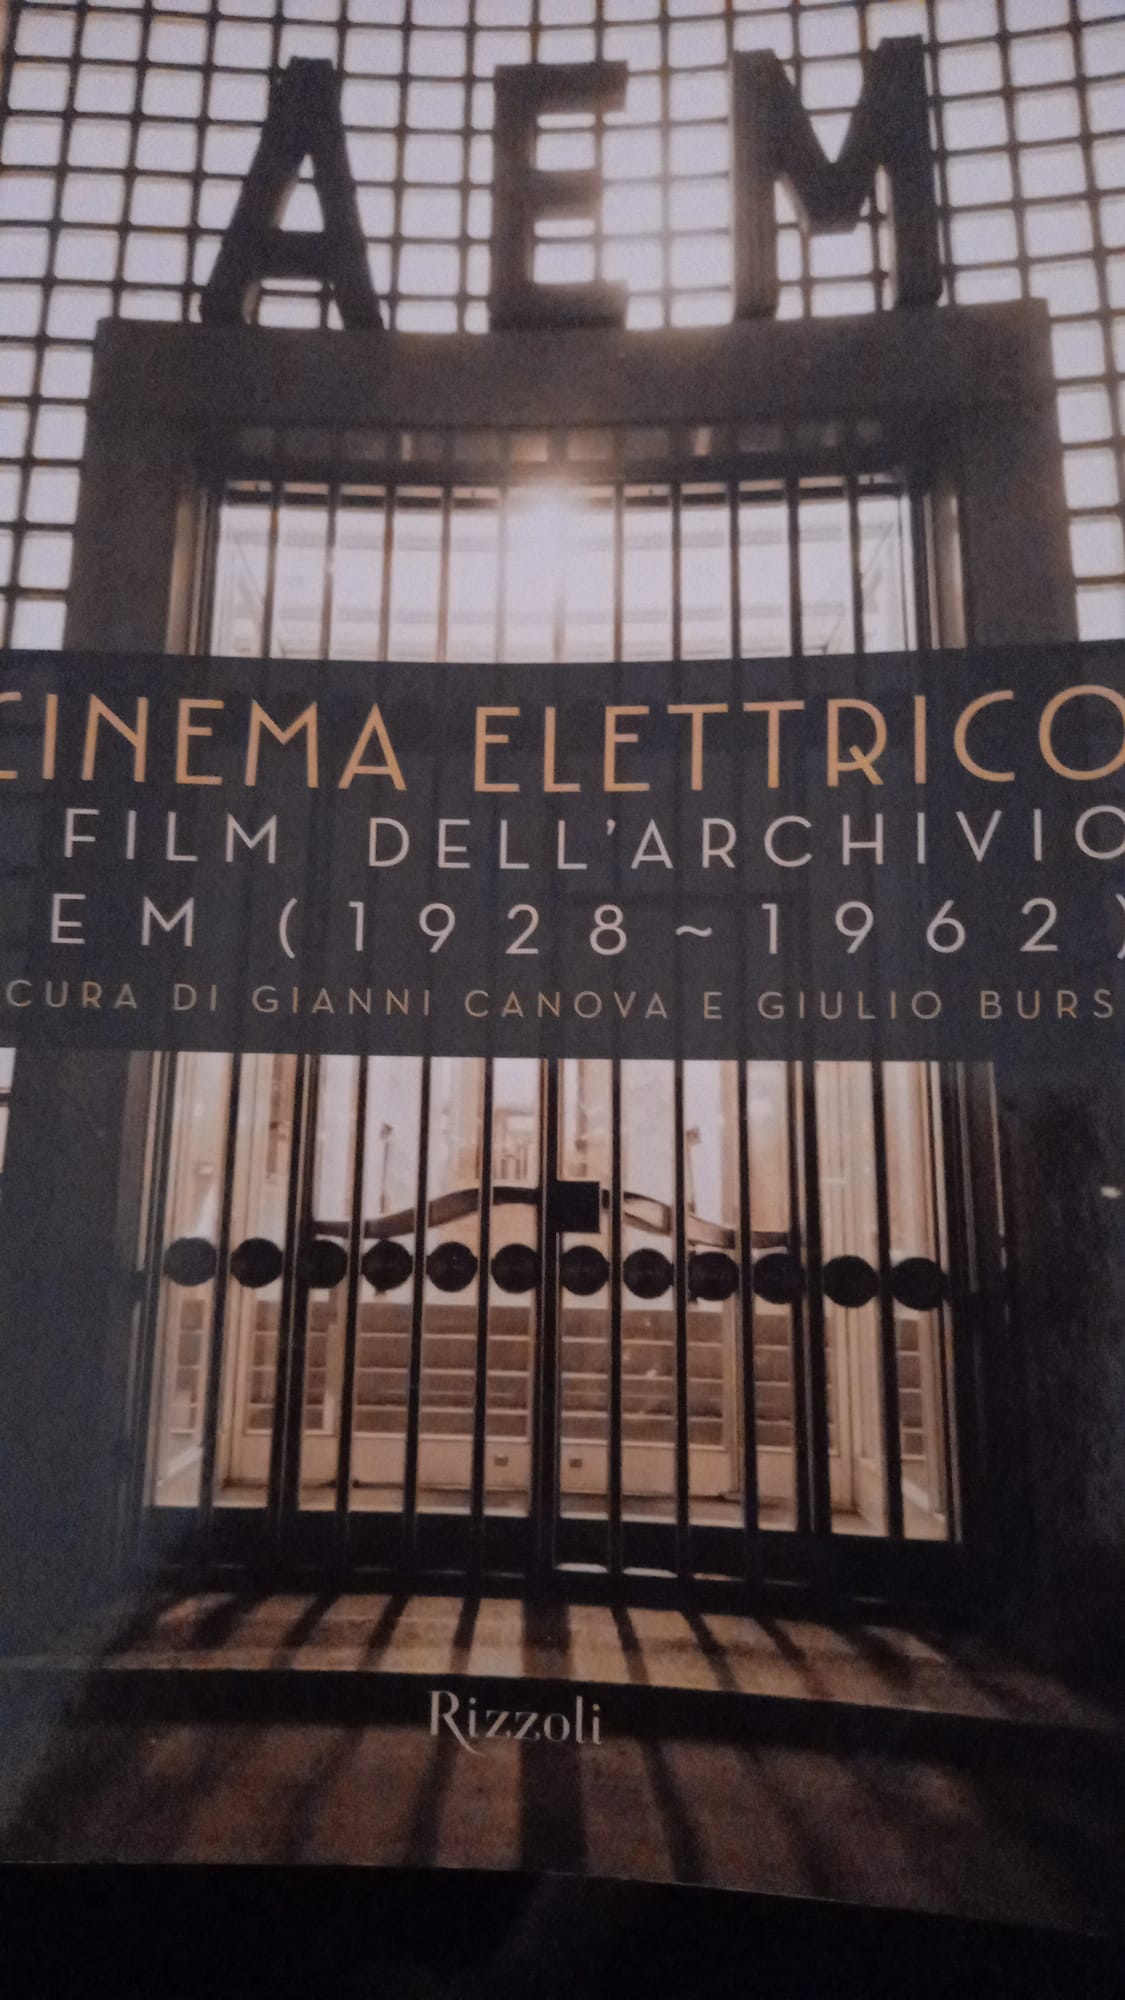 Cinema elettrico. I film dell'archivio Aem (1928-1962)